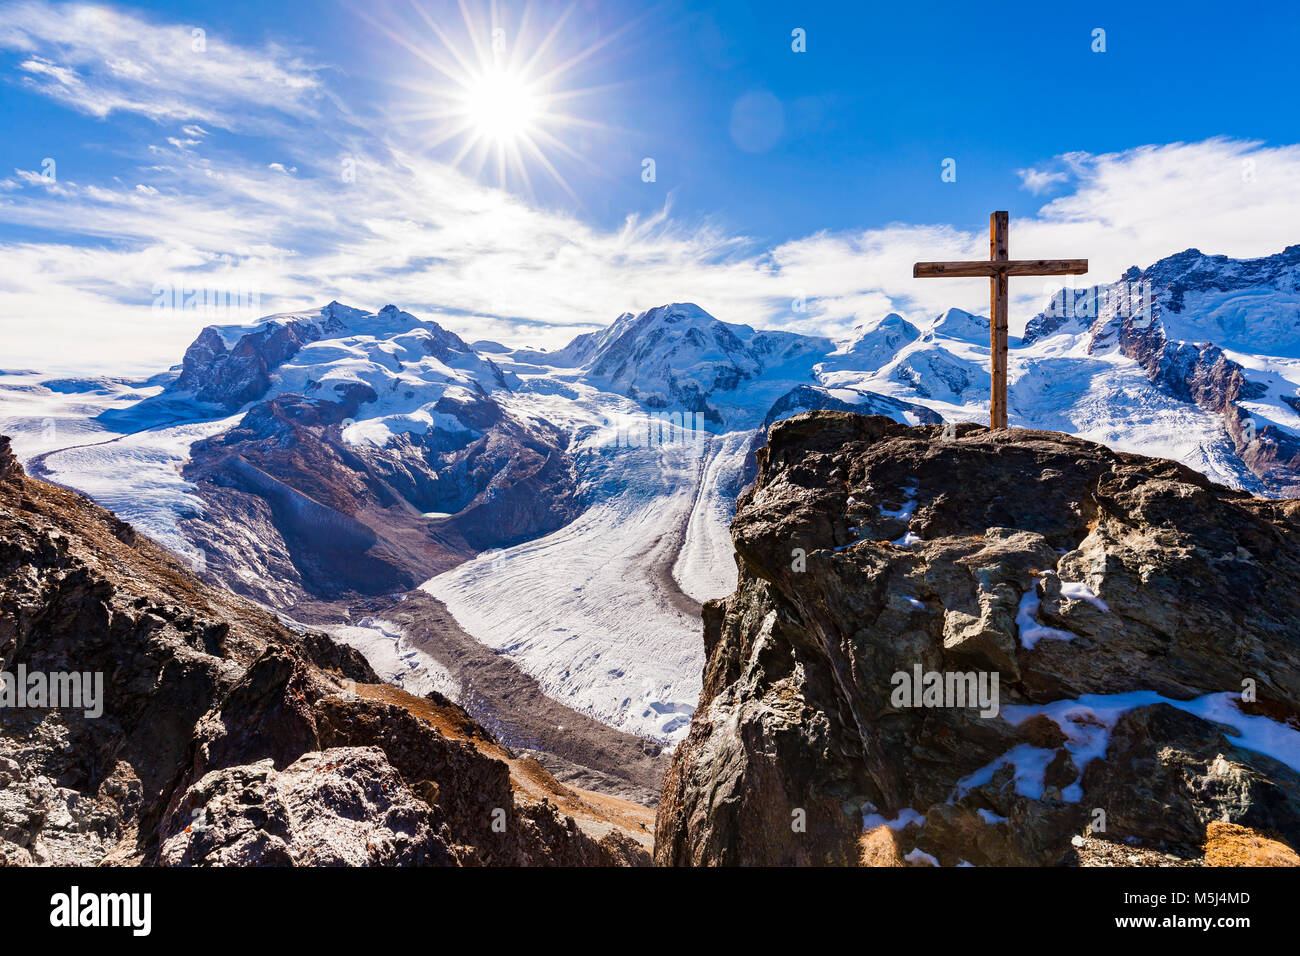 Schweiz, Kanton Wallis, Zermatt, Monte Rosa, Monte-Rosa-Massiv, Monte Rosa Gletscher, Grenzgletscher, Gornergletscher, Gipfelkreuz, Blick vom Gornergr Stock Photo